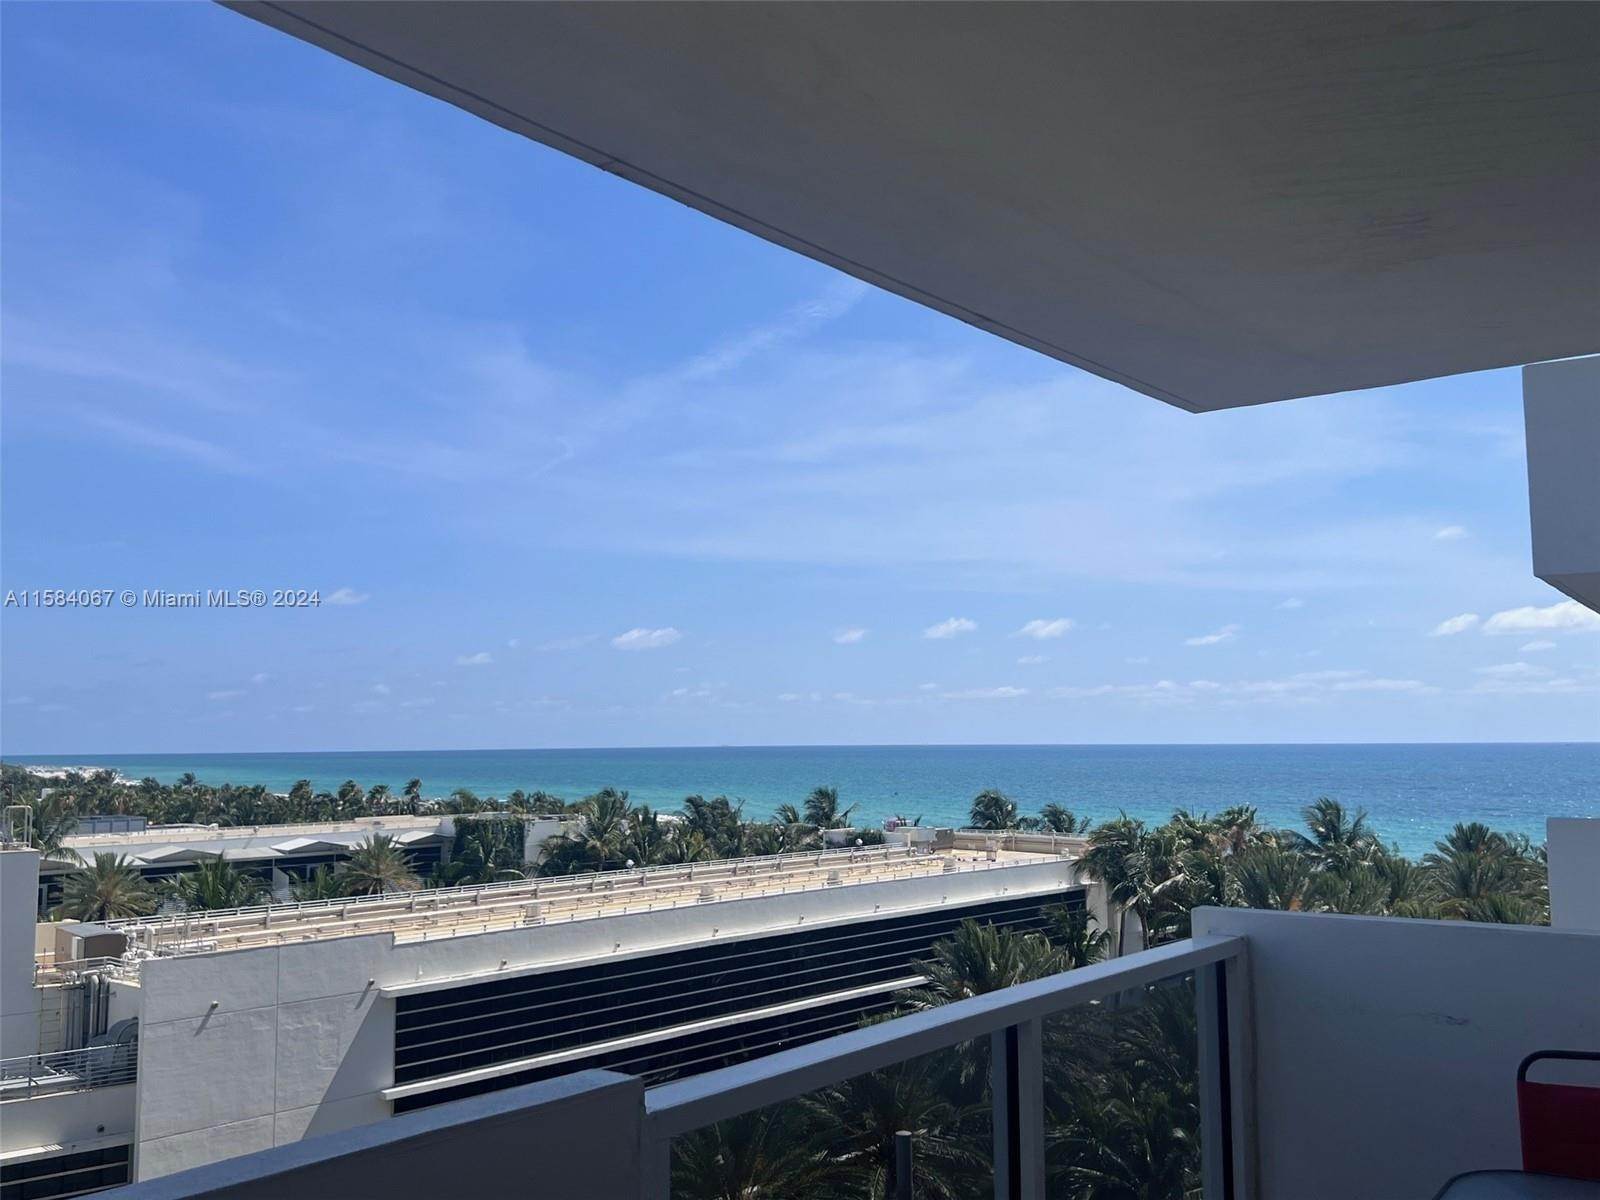 Eigentumswohnung bei City Center, Miami Beach, FL 33139